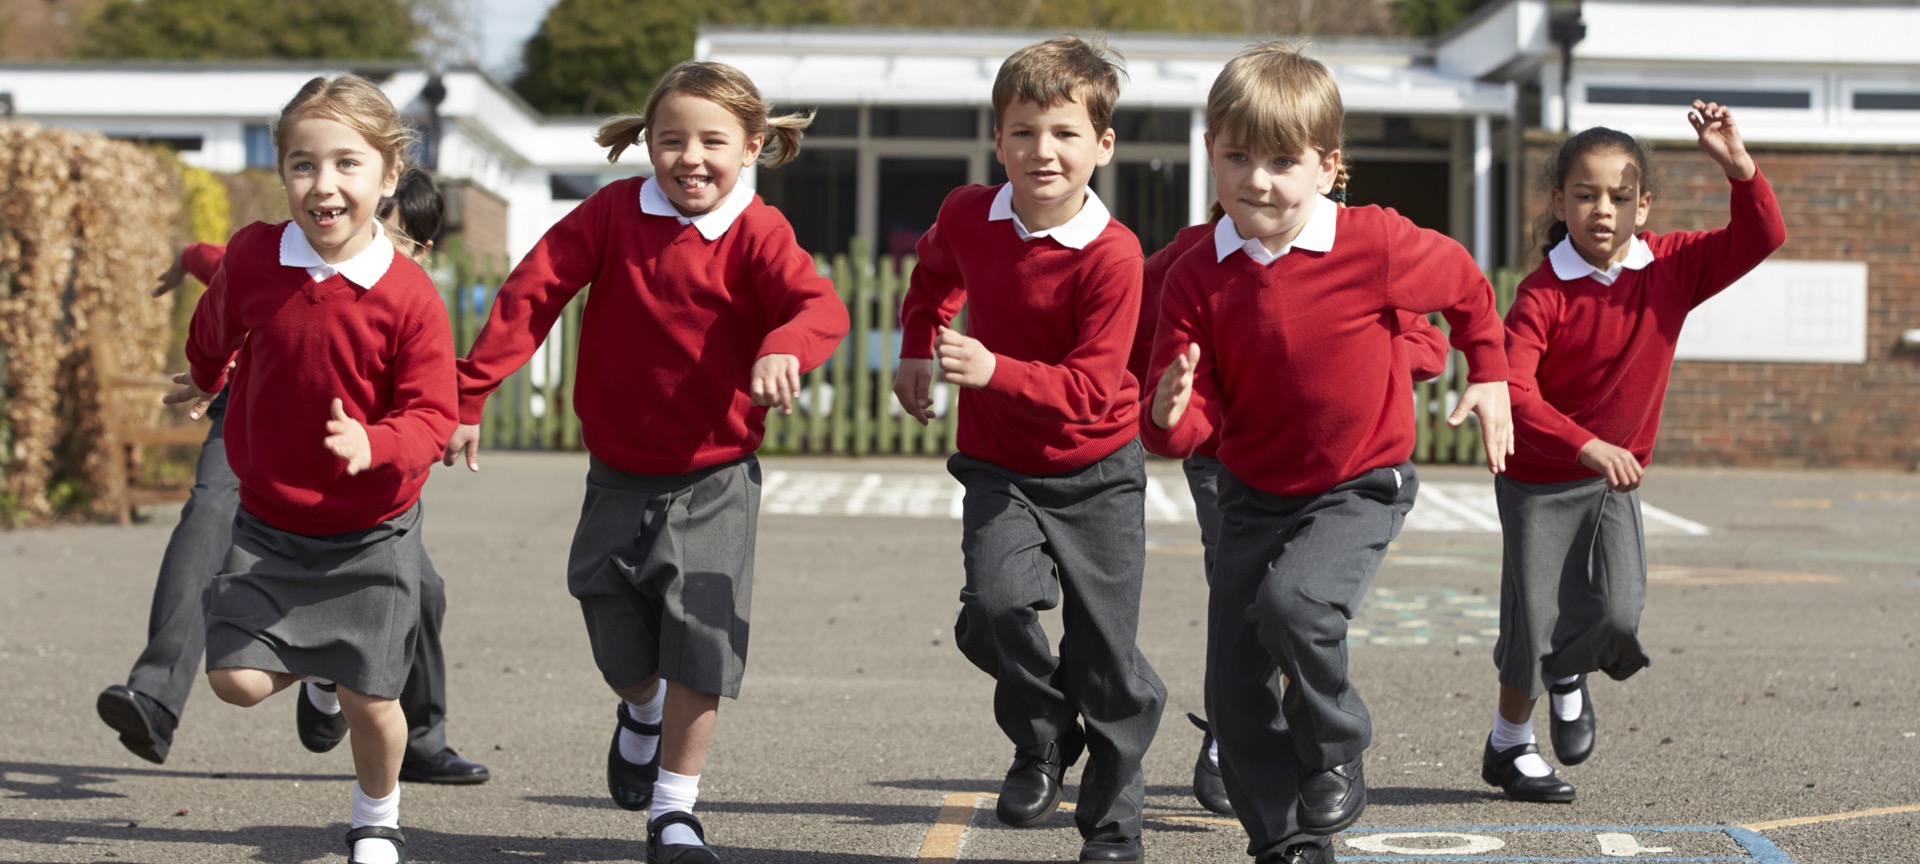 School children running in the playground